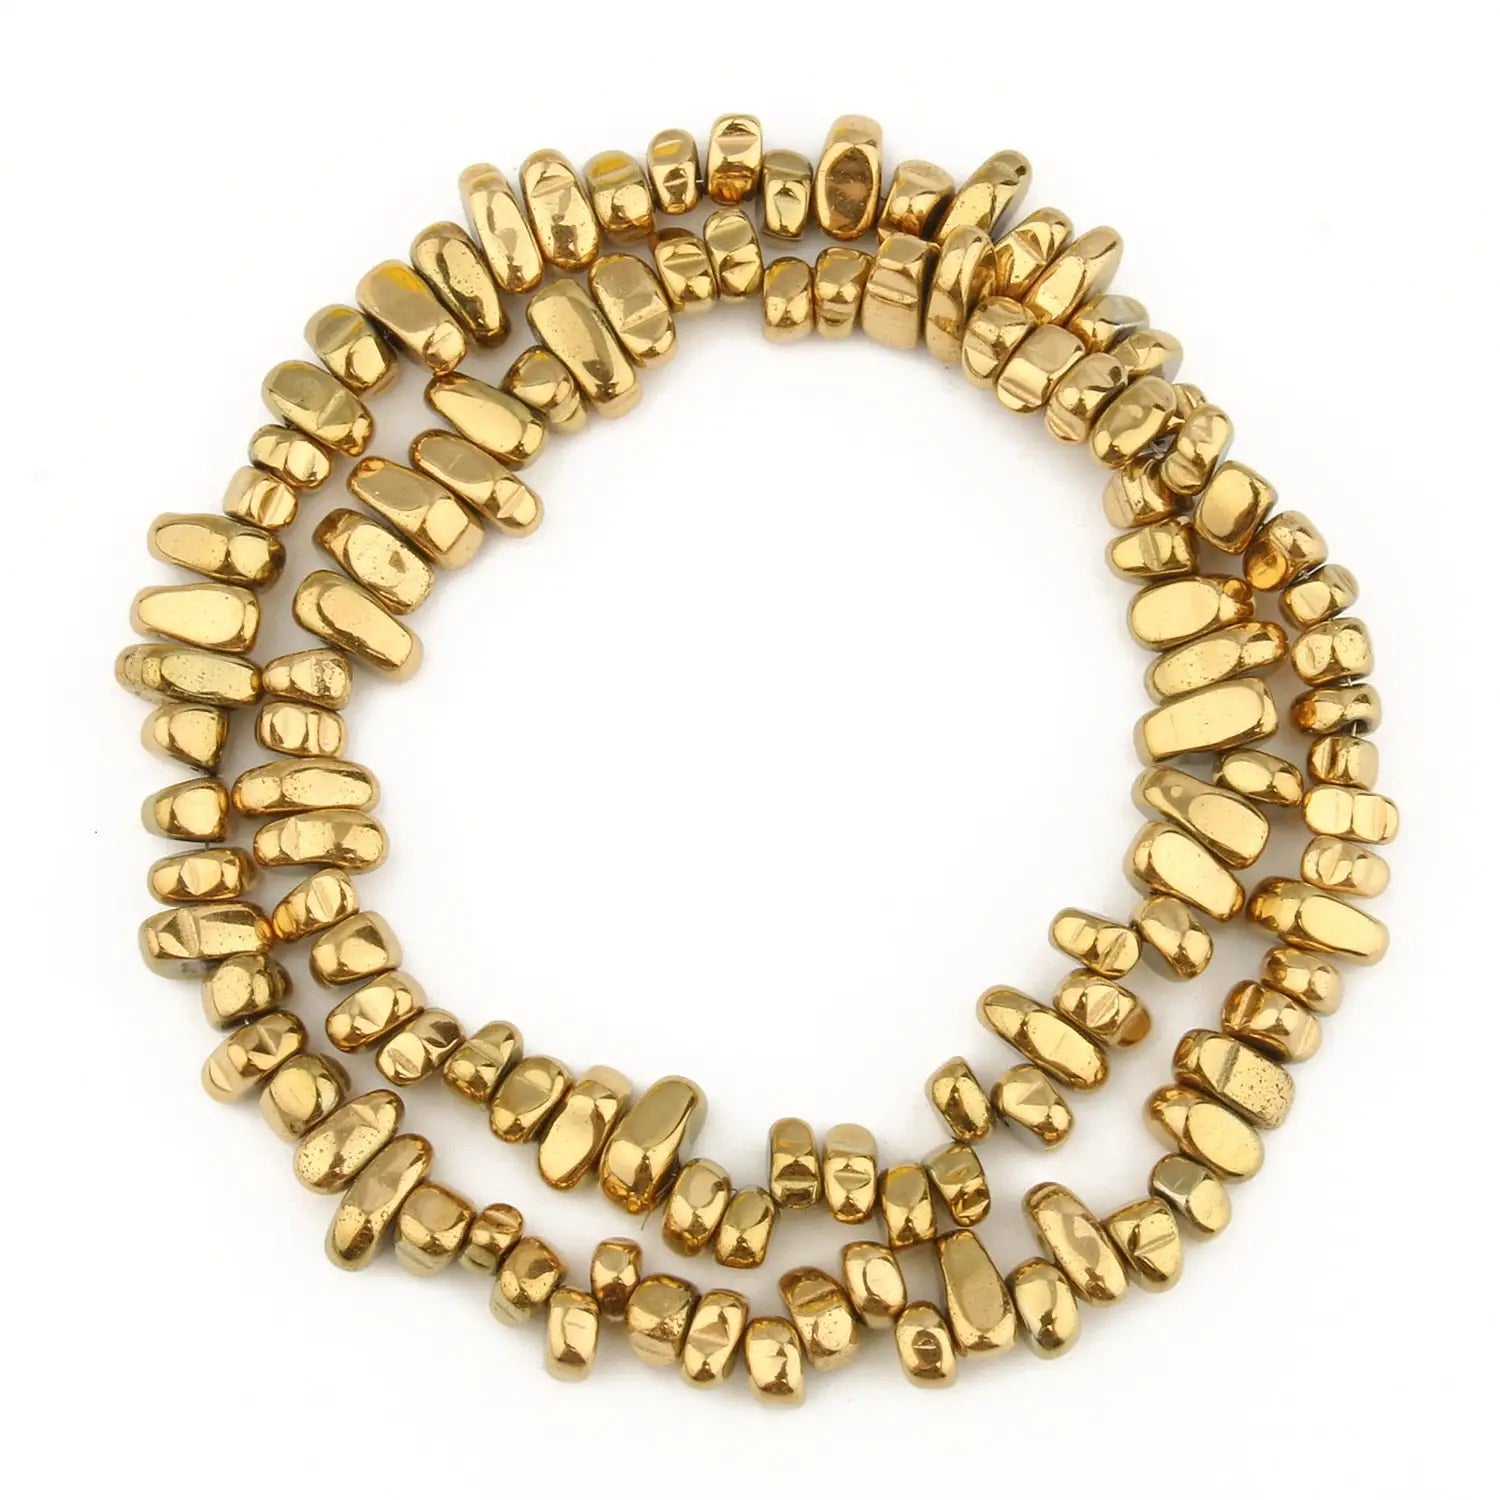 Perles naturelles en hématite de tailles irrégulières - 18K gold